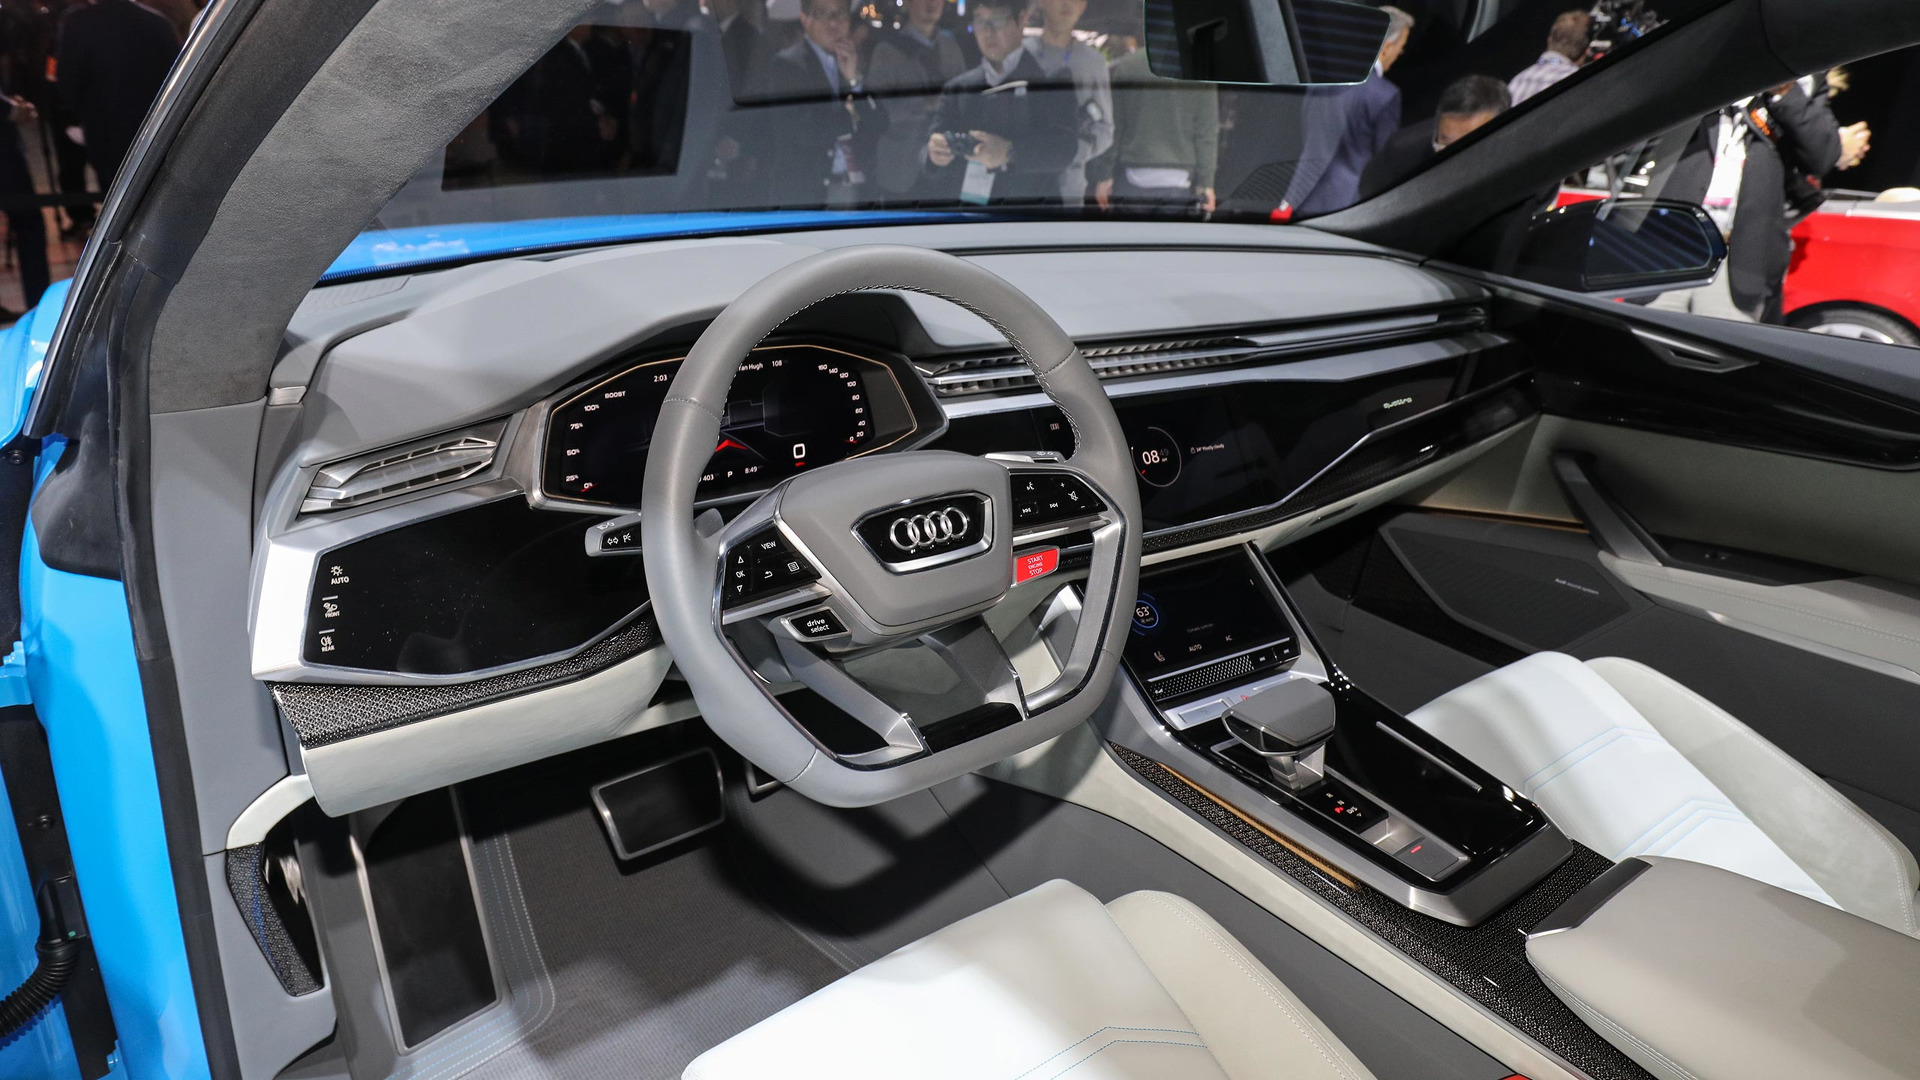 Kap 100km/h për 3.8 sekonda, Audi RS Q8 thyen rekord në pistë